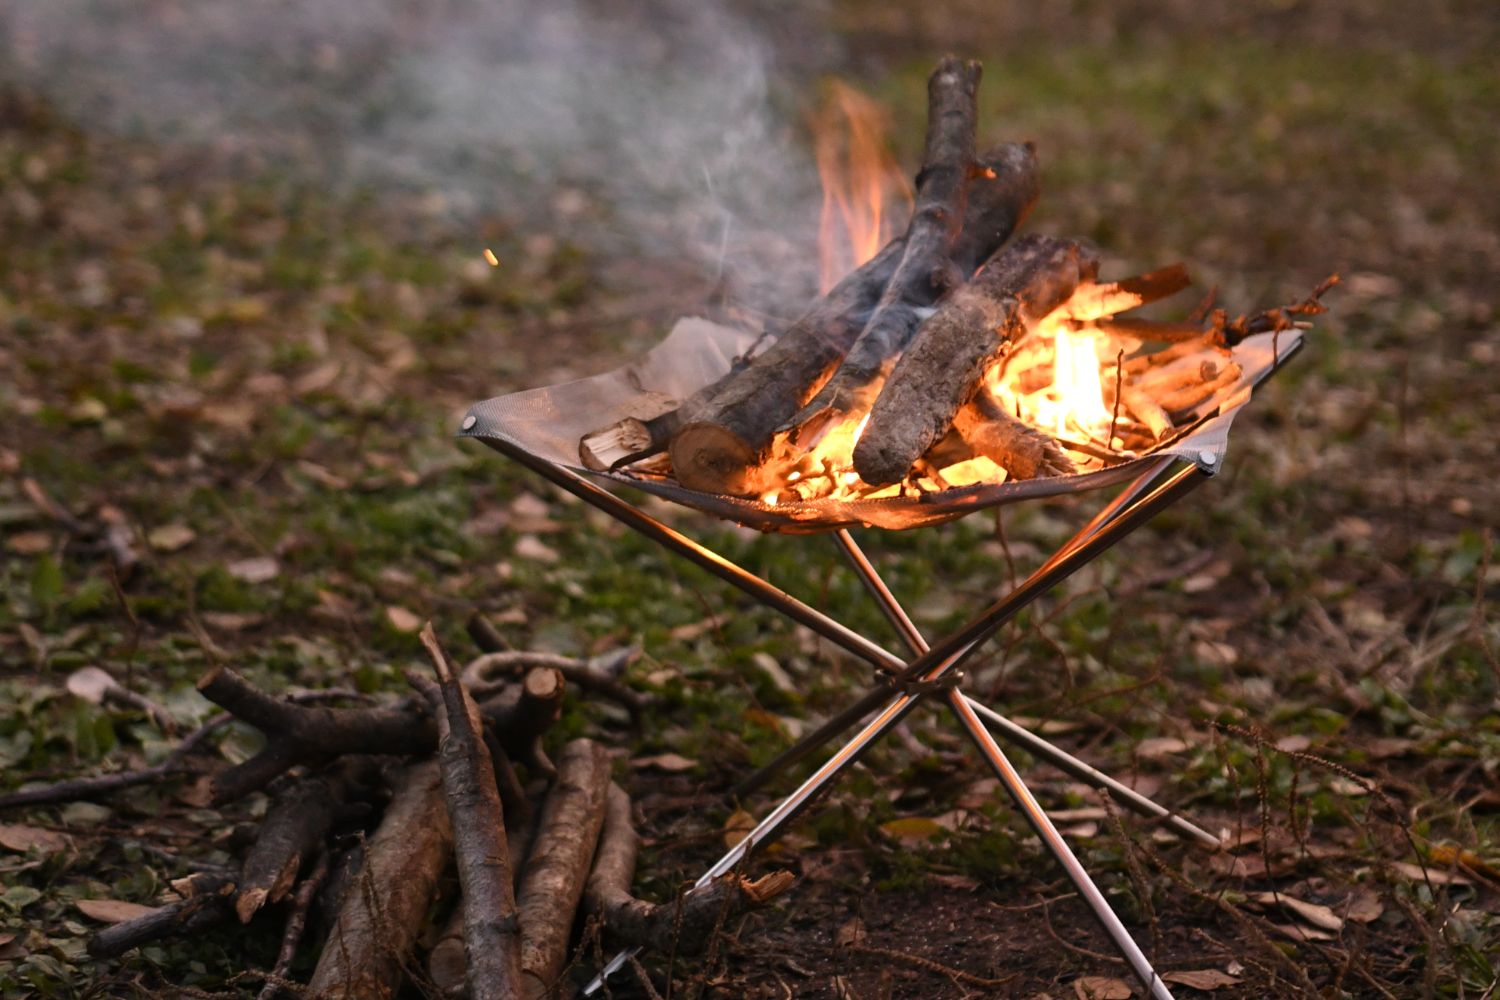 ソロキャンプにピッタリな焚き火台の 最適解 を探そう 焚き火 火おこし道具 Be Pal キャンプ アウトドア 自然派生活の情報源ビーパル